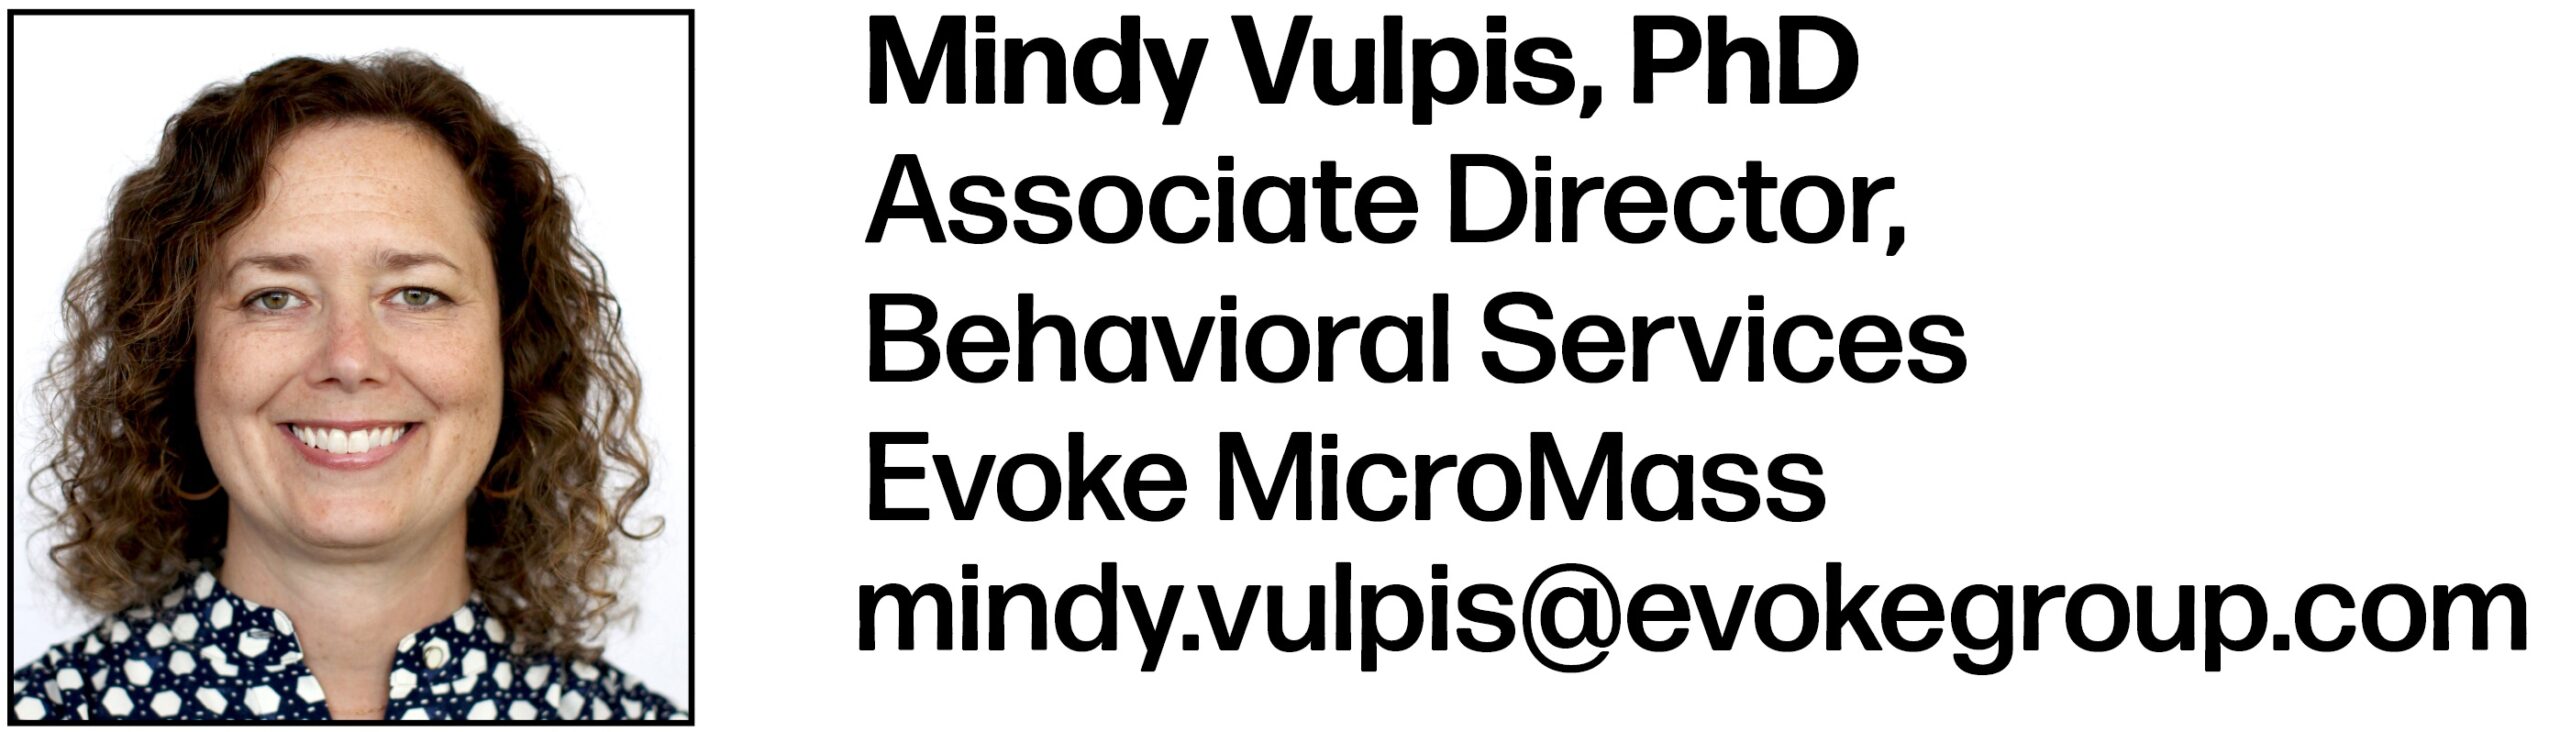 Mindy Vulpis, PhD Associate Director, Behavioral Services Evoke MicroMass mindy.vulpis@evokegroup.com